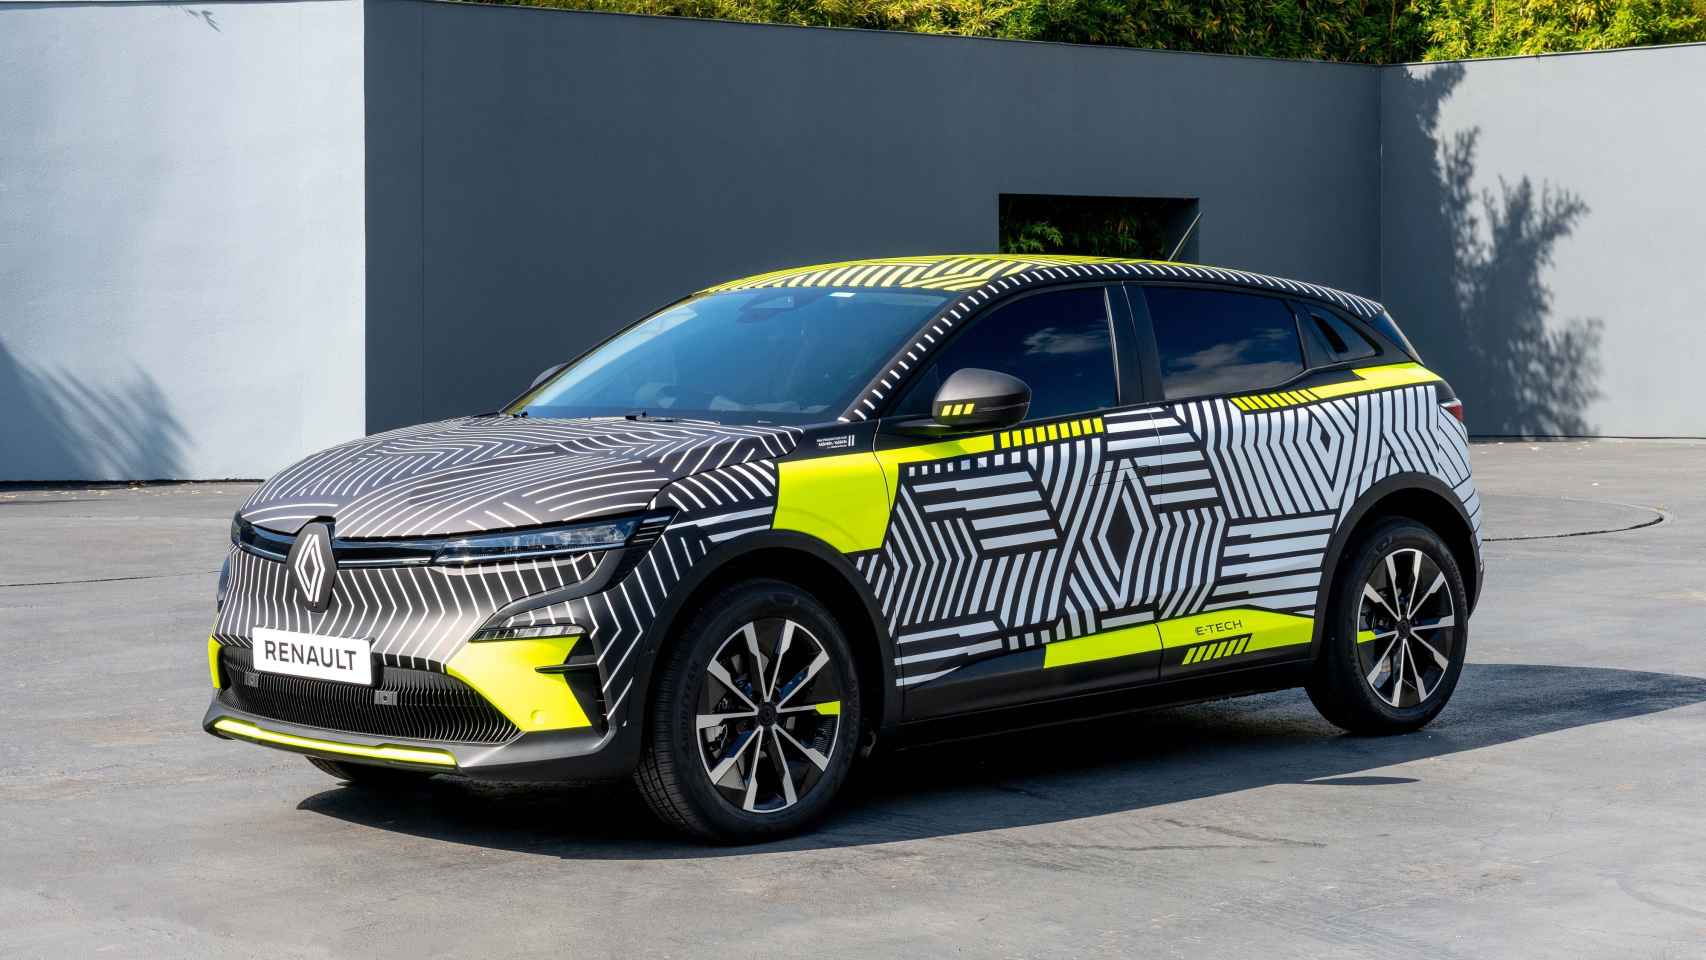 El nuevo Renault Mégane solo será eléctrico y tendrá 450 kilómetros de autonomía